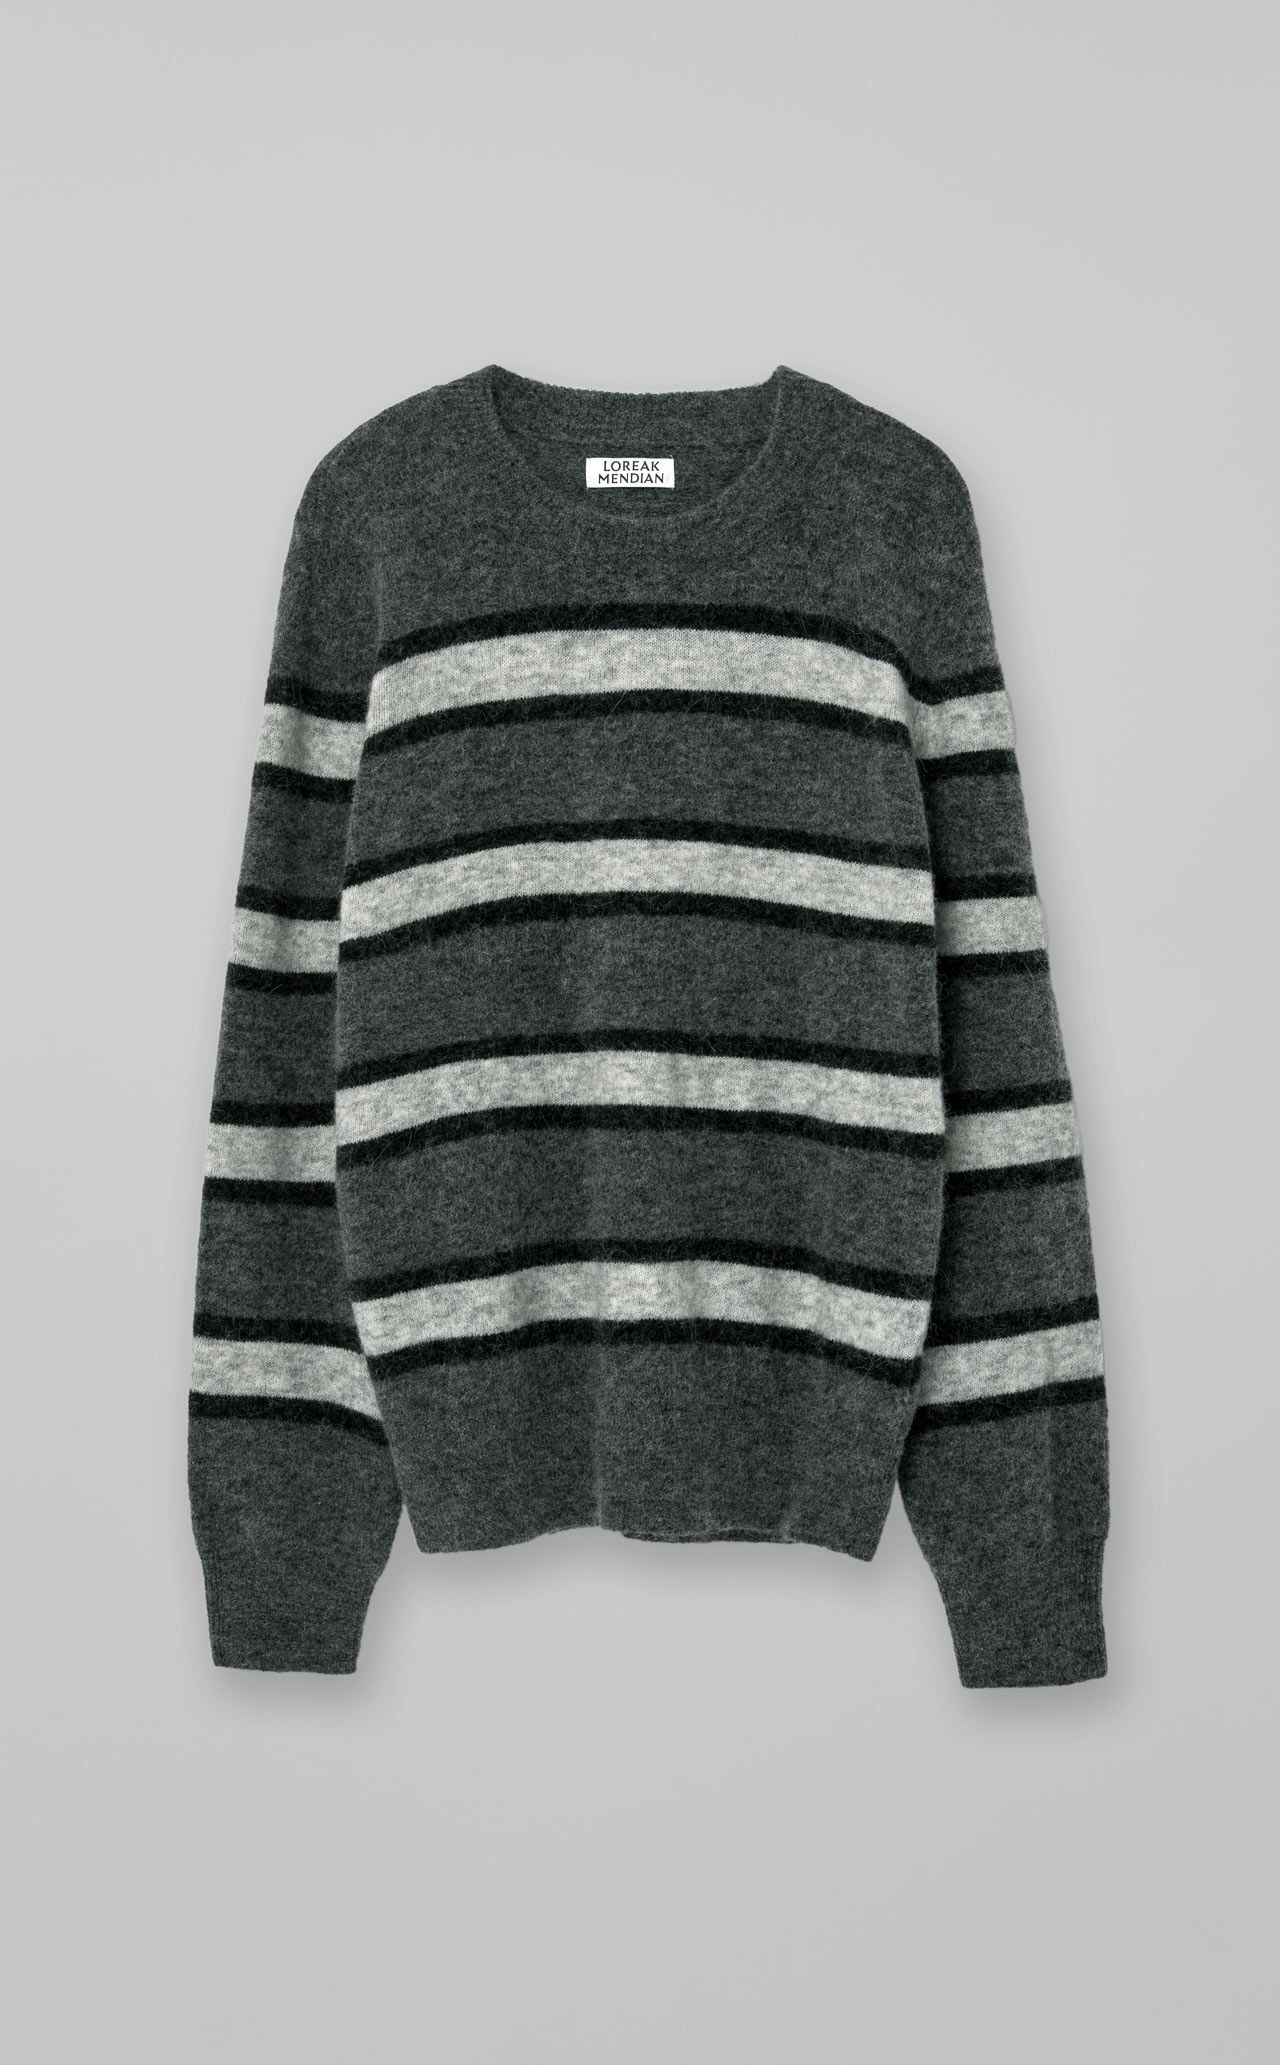 Nero Sweater